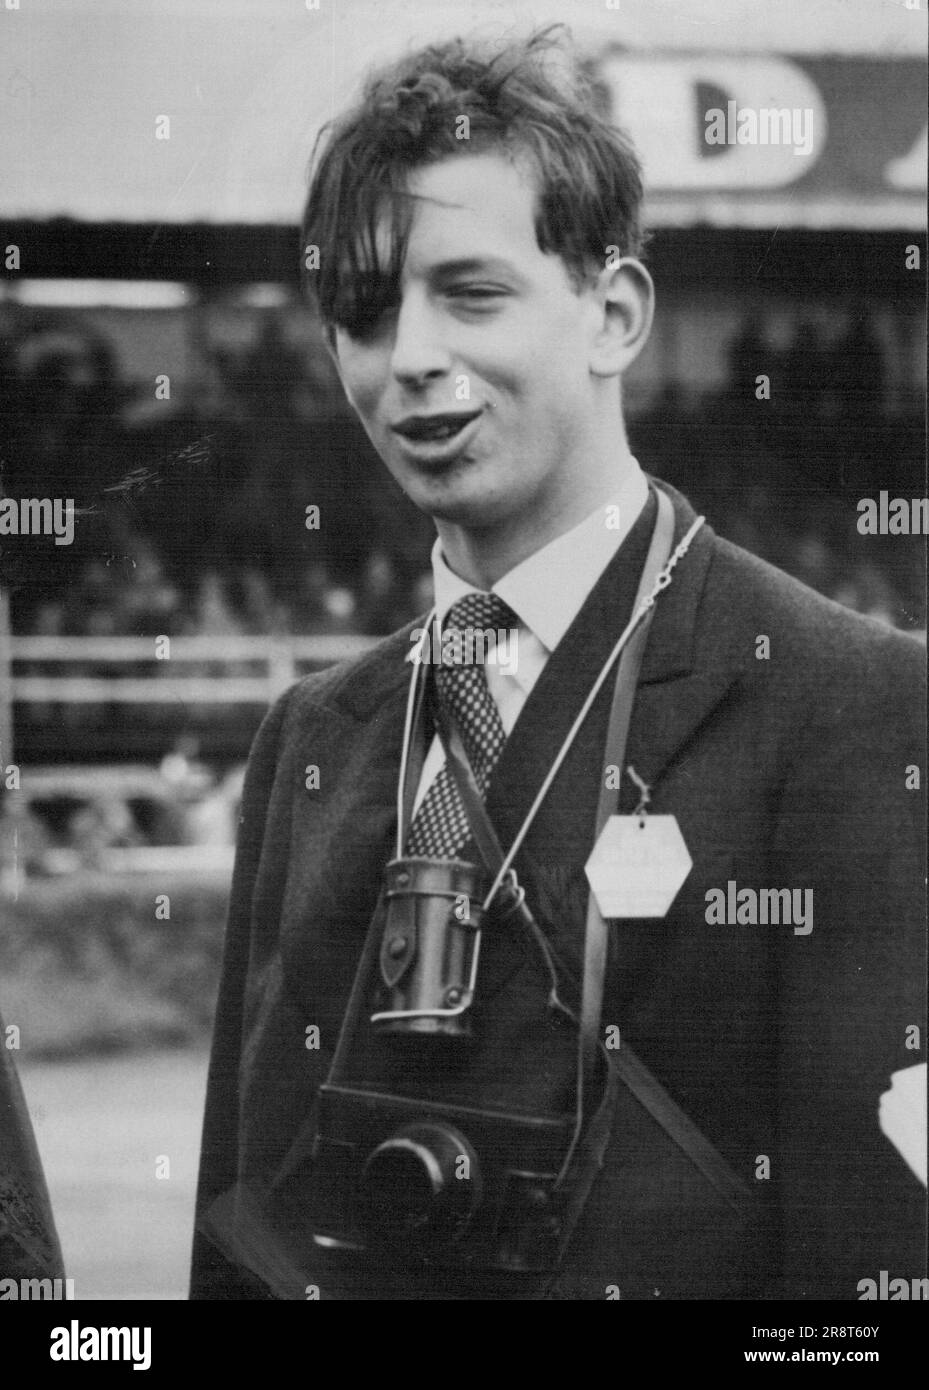 Un fan de Silverstone aujourd'hui, 17 juillet était le jeune duc de Kent, faisant sa première sortie publique depuis son récent accident de voiture pour assister au Grand Prix de Grande-Bretagne. 17 juillet 1954. (Photo par photo de presse associée). Banque D'Images